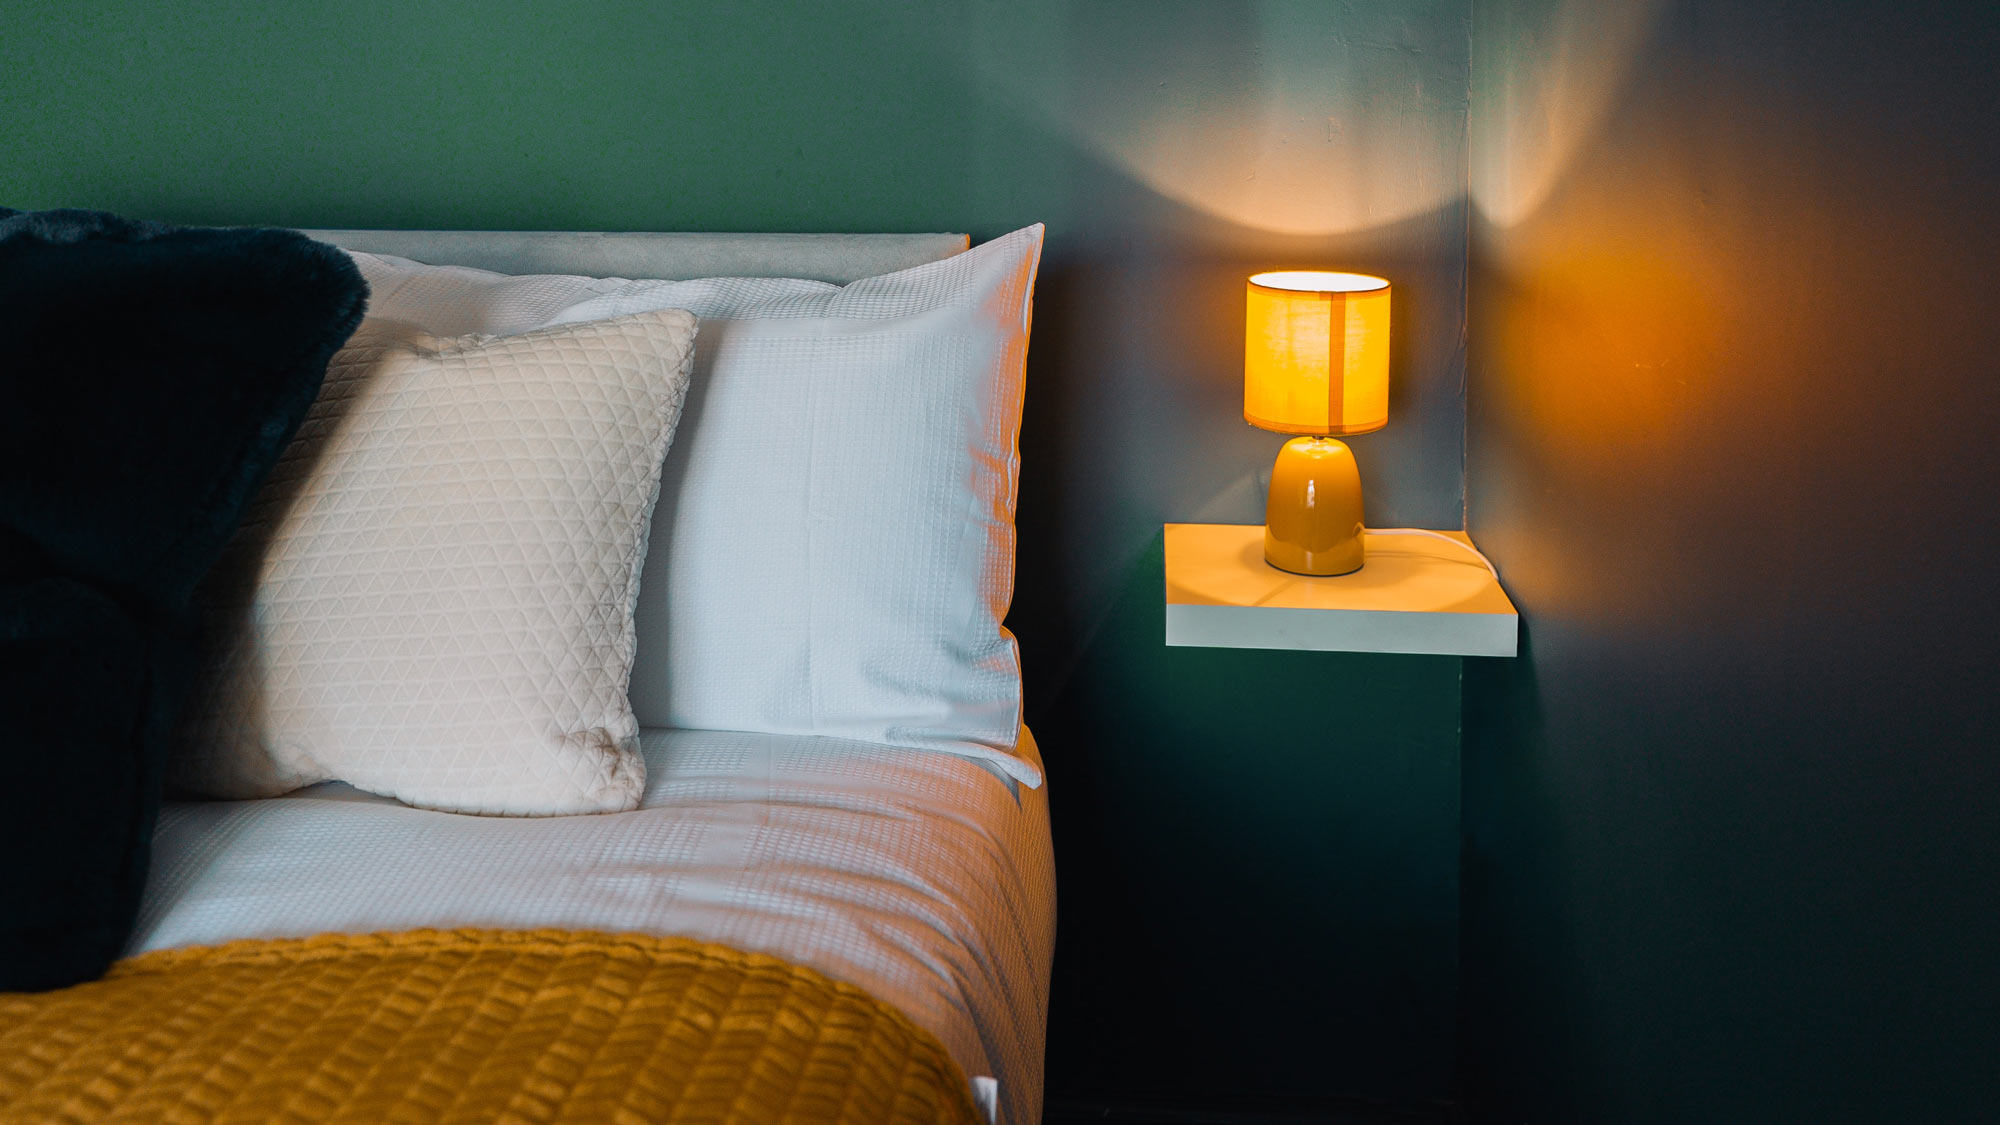 Lamp at bedside emitting orange light